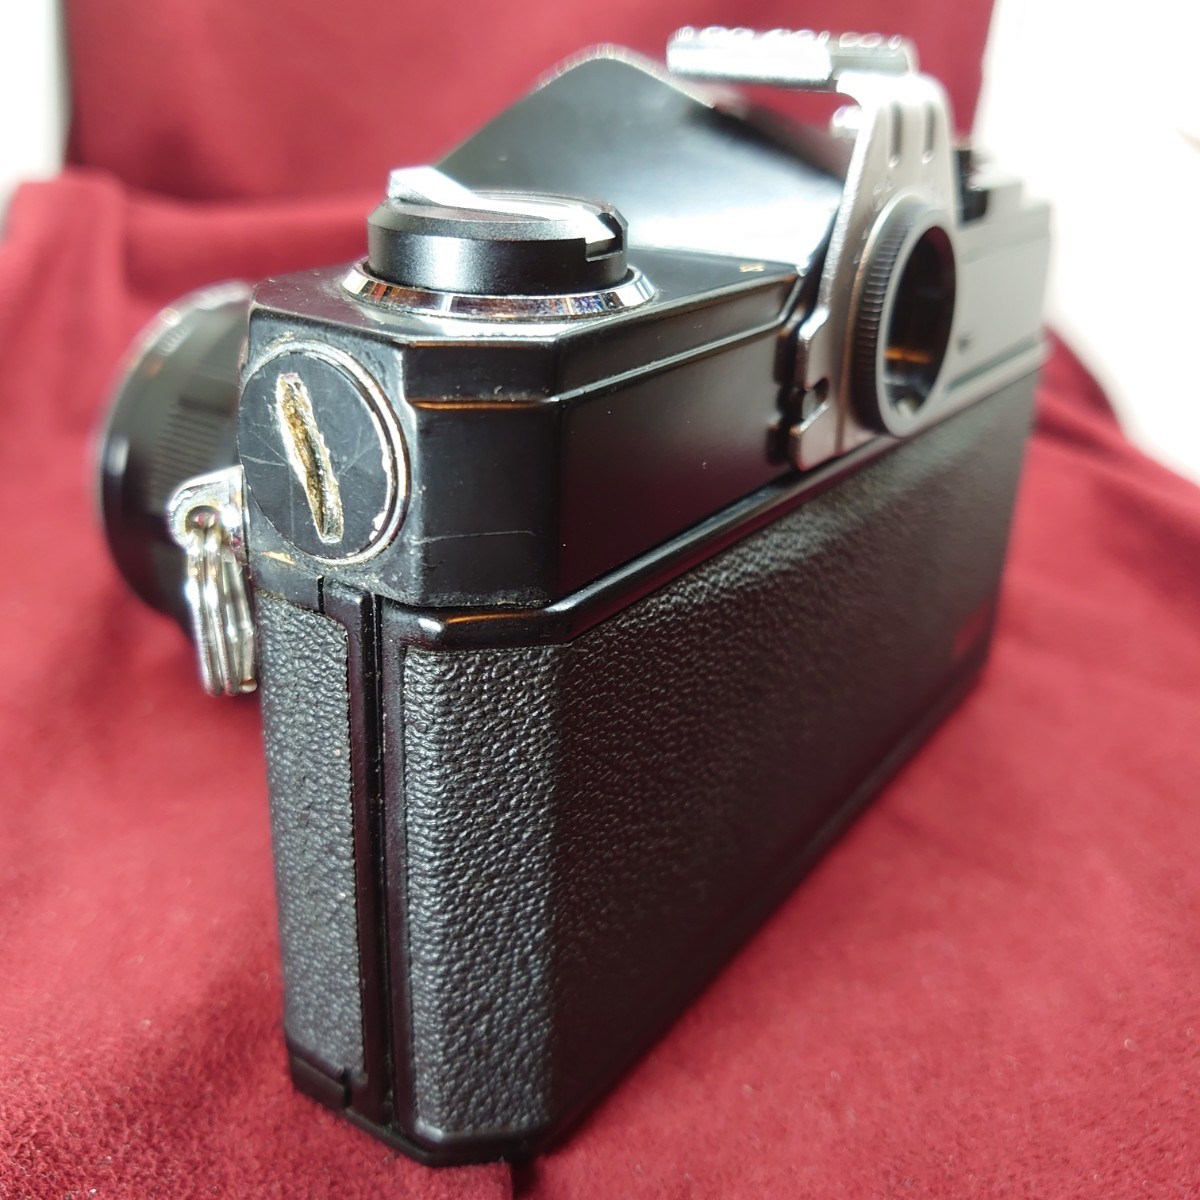 212【シャッターOK】FUJICA ST701 一眼レフフィルムカメラ フジカ LENS FUJINON F:1.8 55mm ブラックボディ+レンズセット_画像5